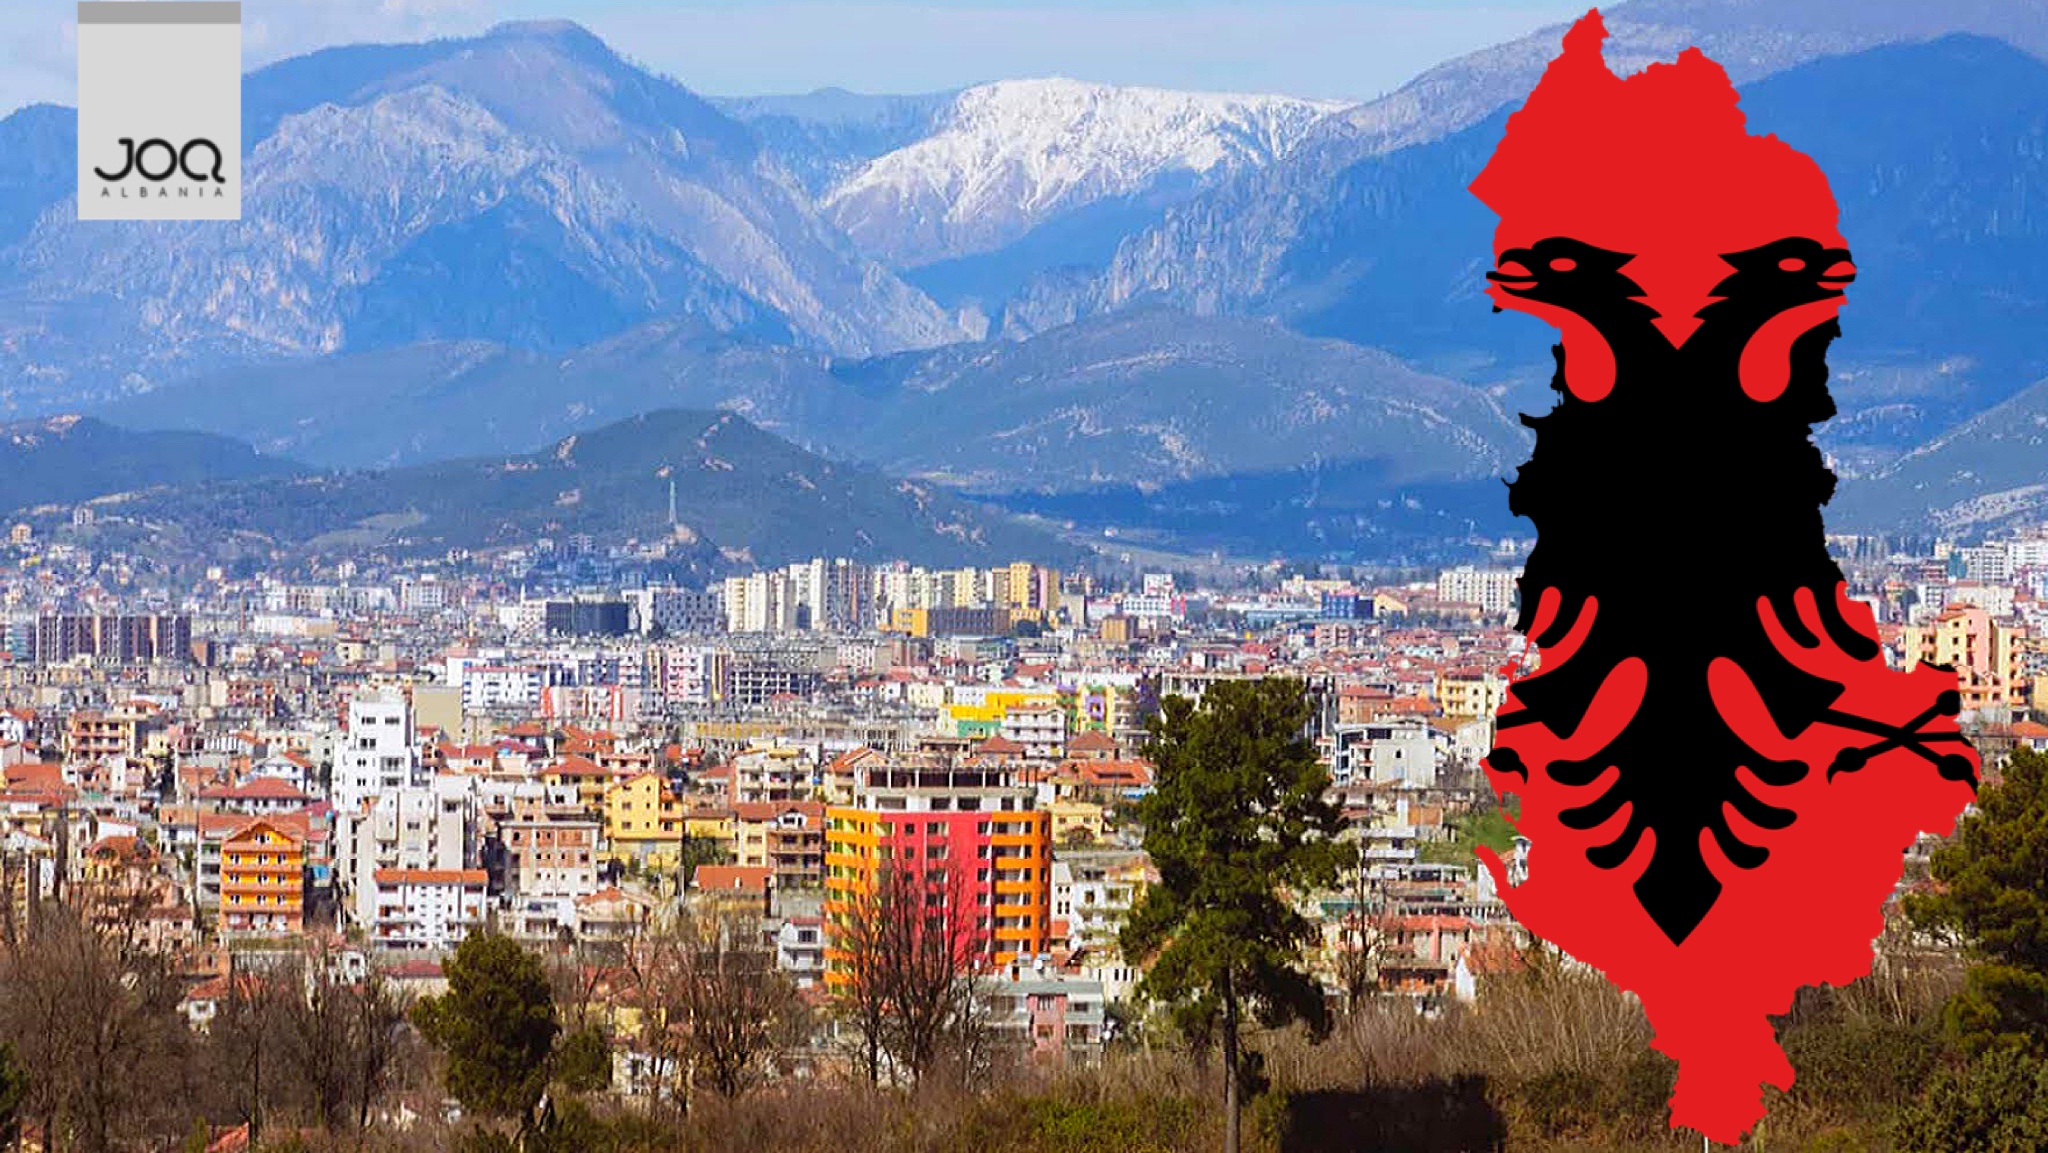 Shqiptarët: Duam të ikim të gjithë nga këtu për shkak të varfërisë!